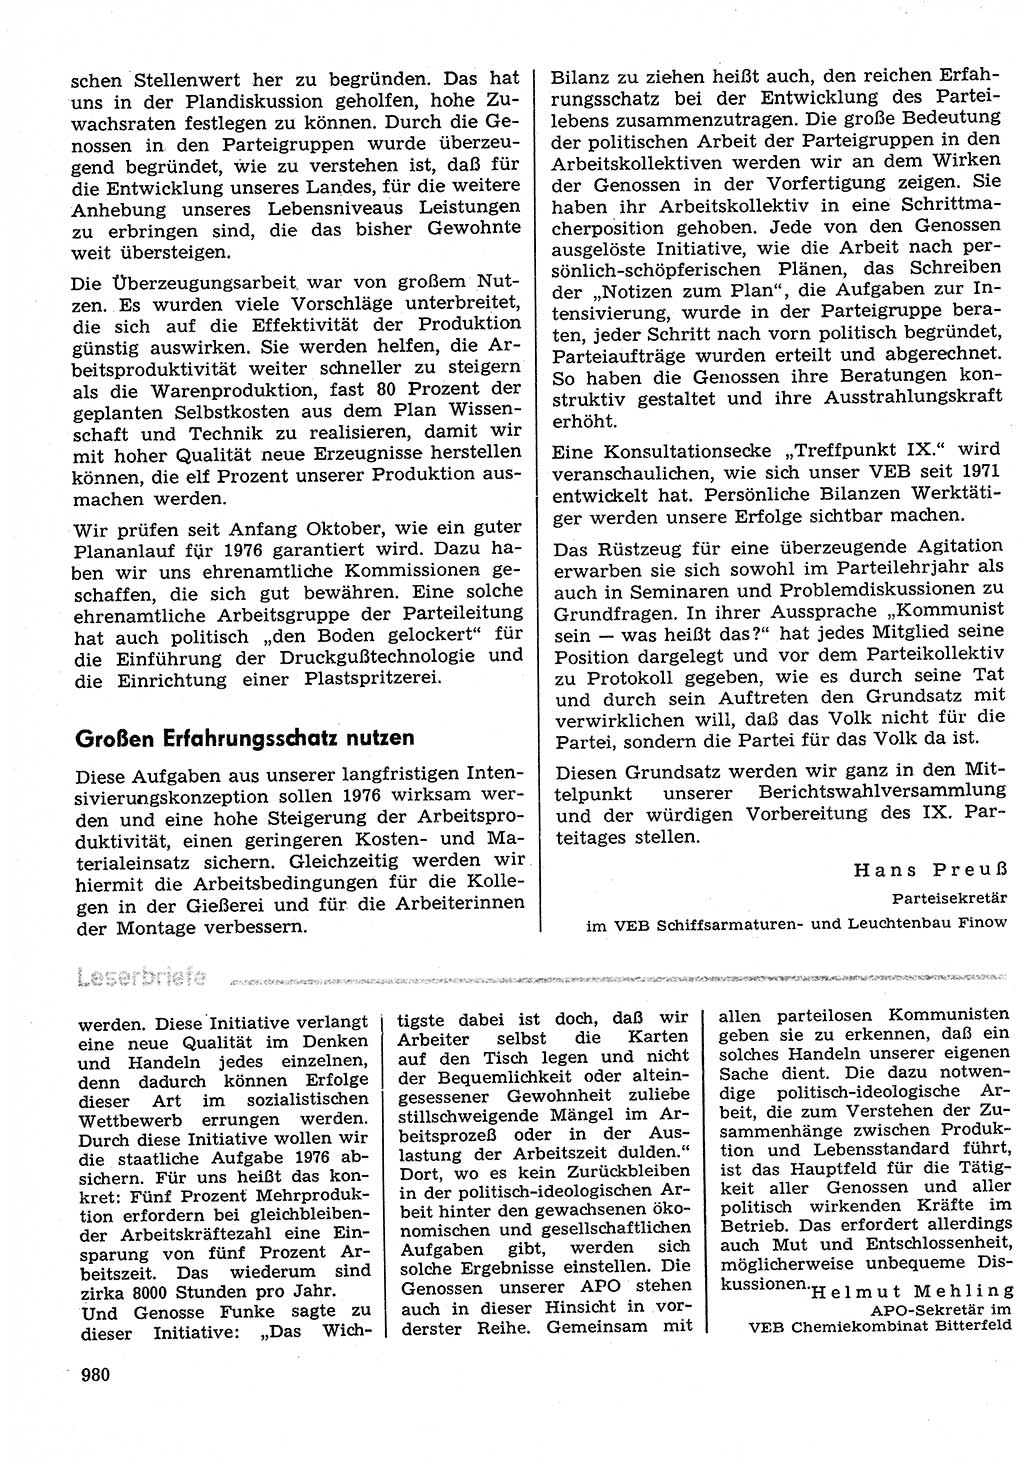 Neuer Weg (NW), Organ des Zentralkomitees (ZK) der SED (Sozialistische Einheitspartei Deutschlands) für Fragen des Parteilebens, 30. Jahrgang [Deutsche Demokratische Republik (DDR)] 1975, Seite 980 (NW ZK SED DDR 1975, S. 980)